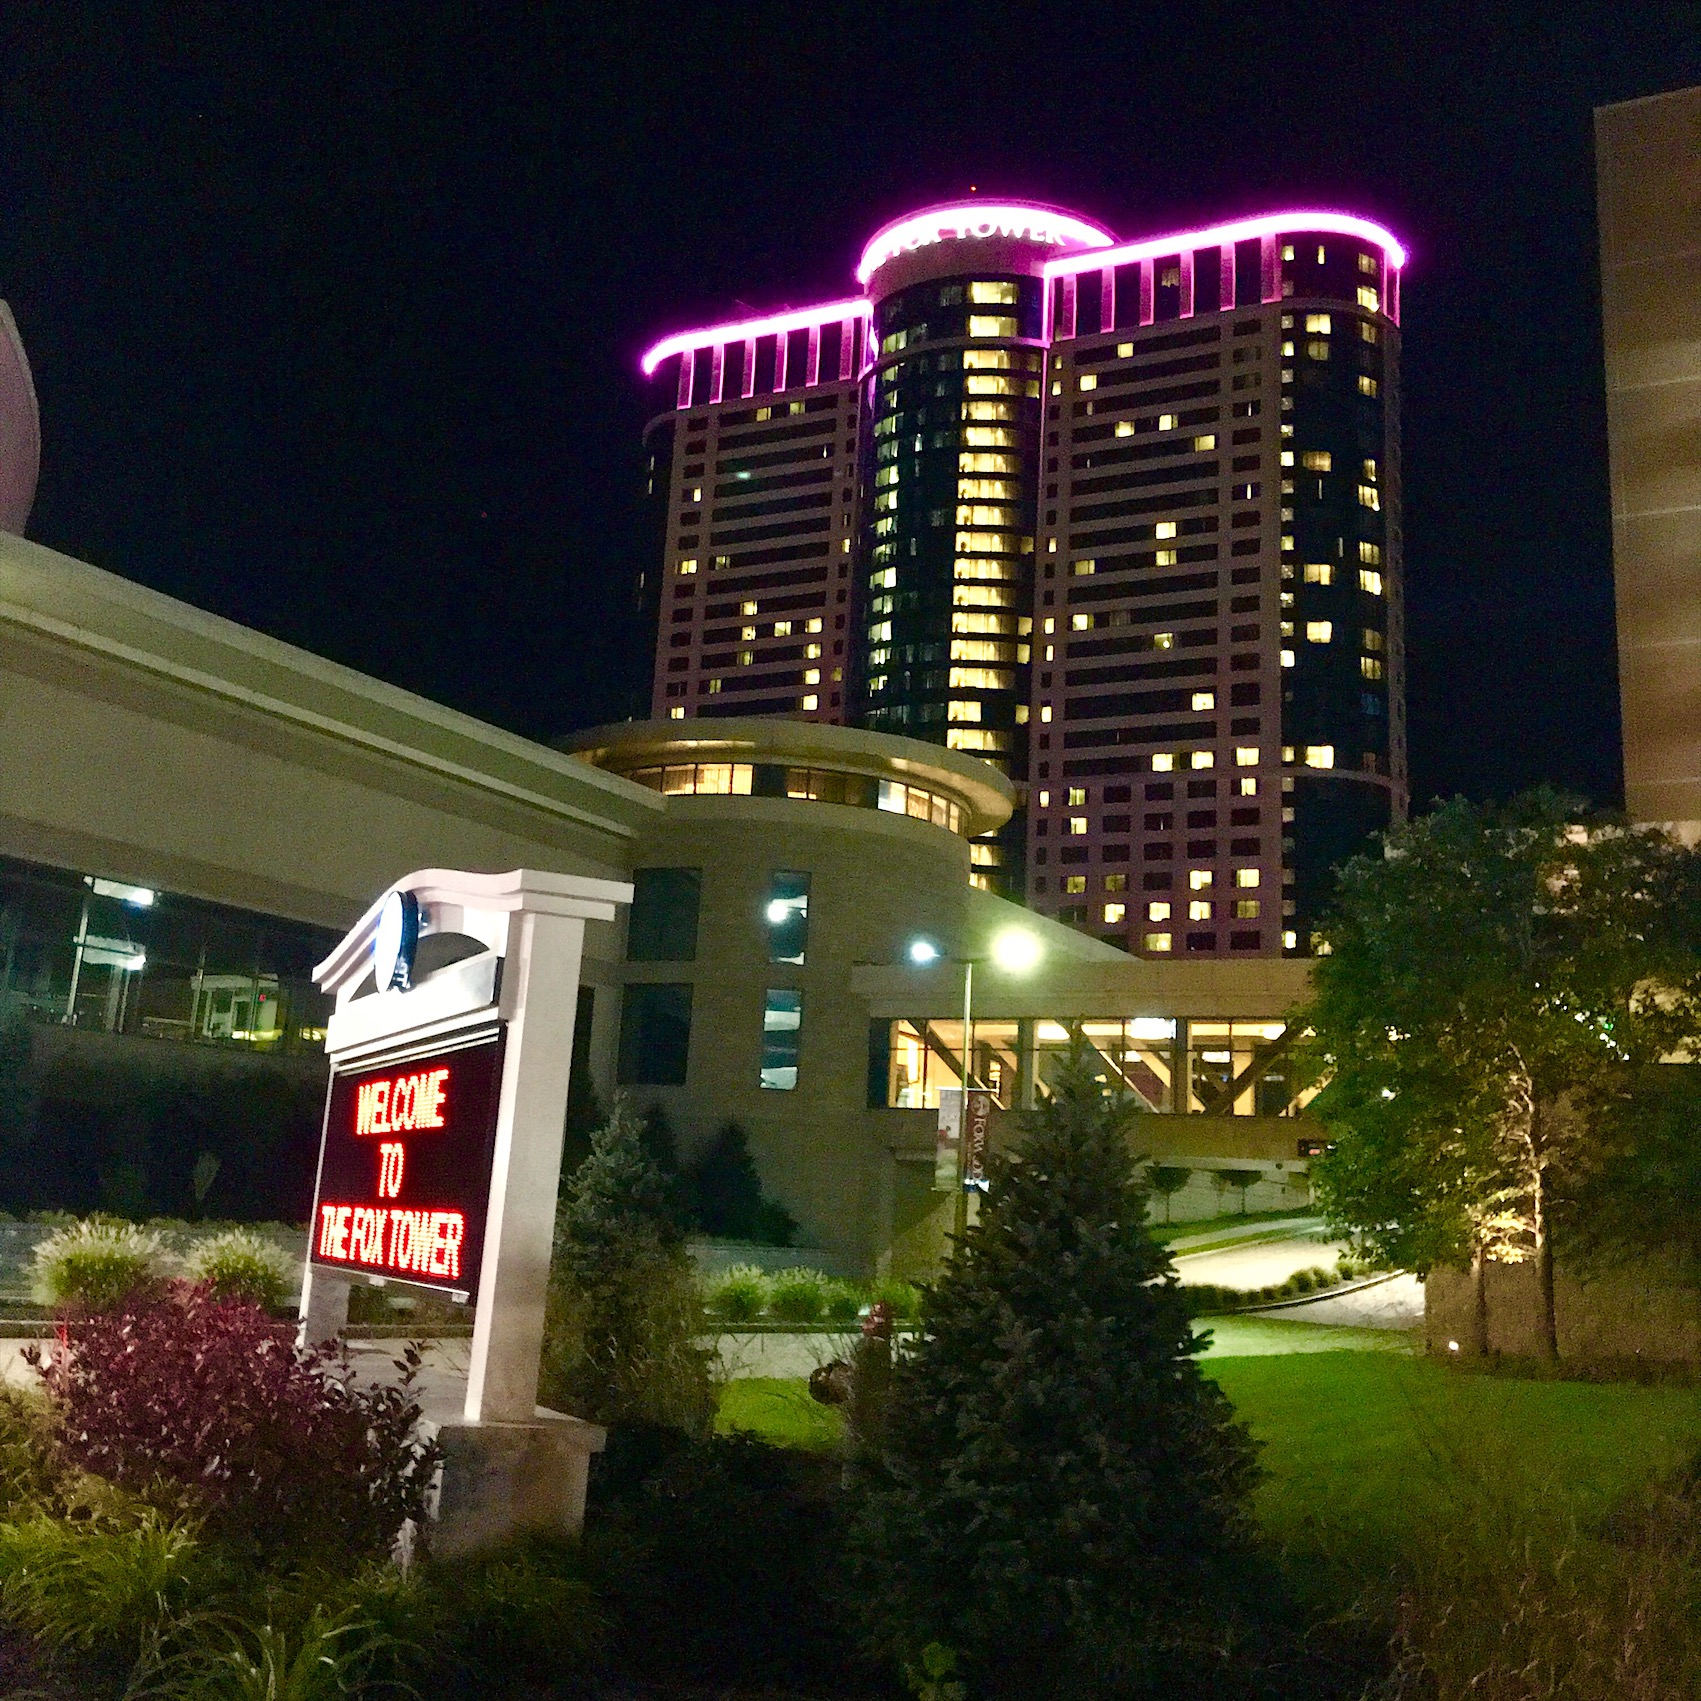 The Fox Tower at Foxwoods Resort Casino